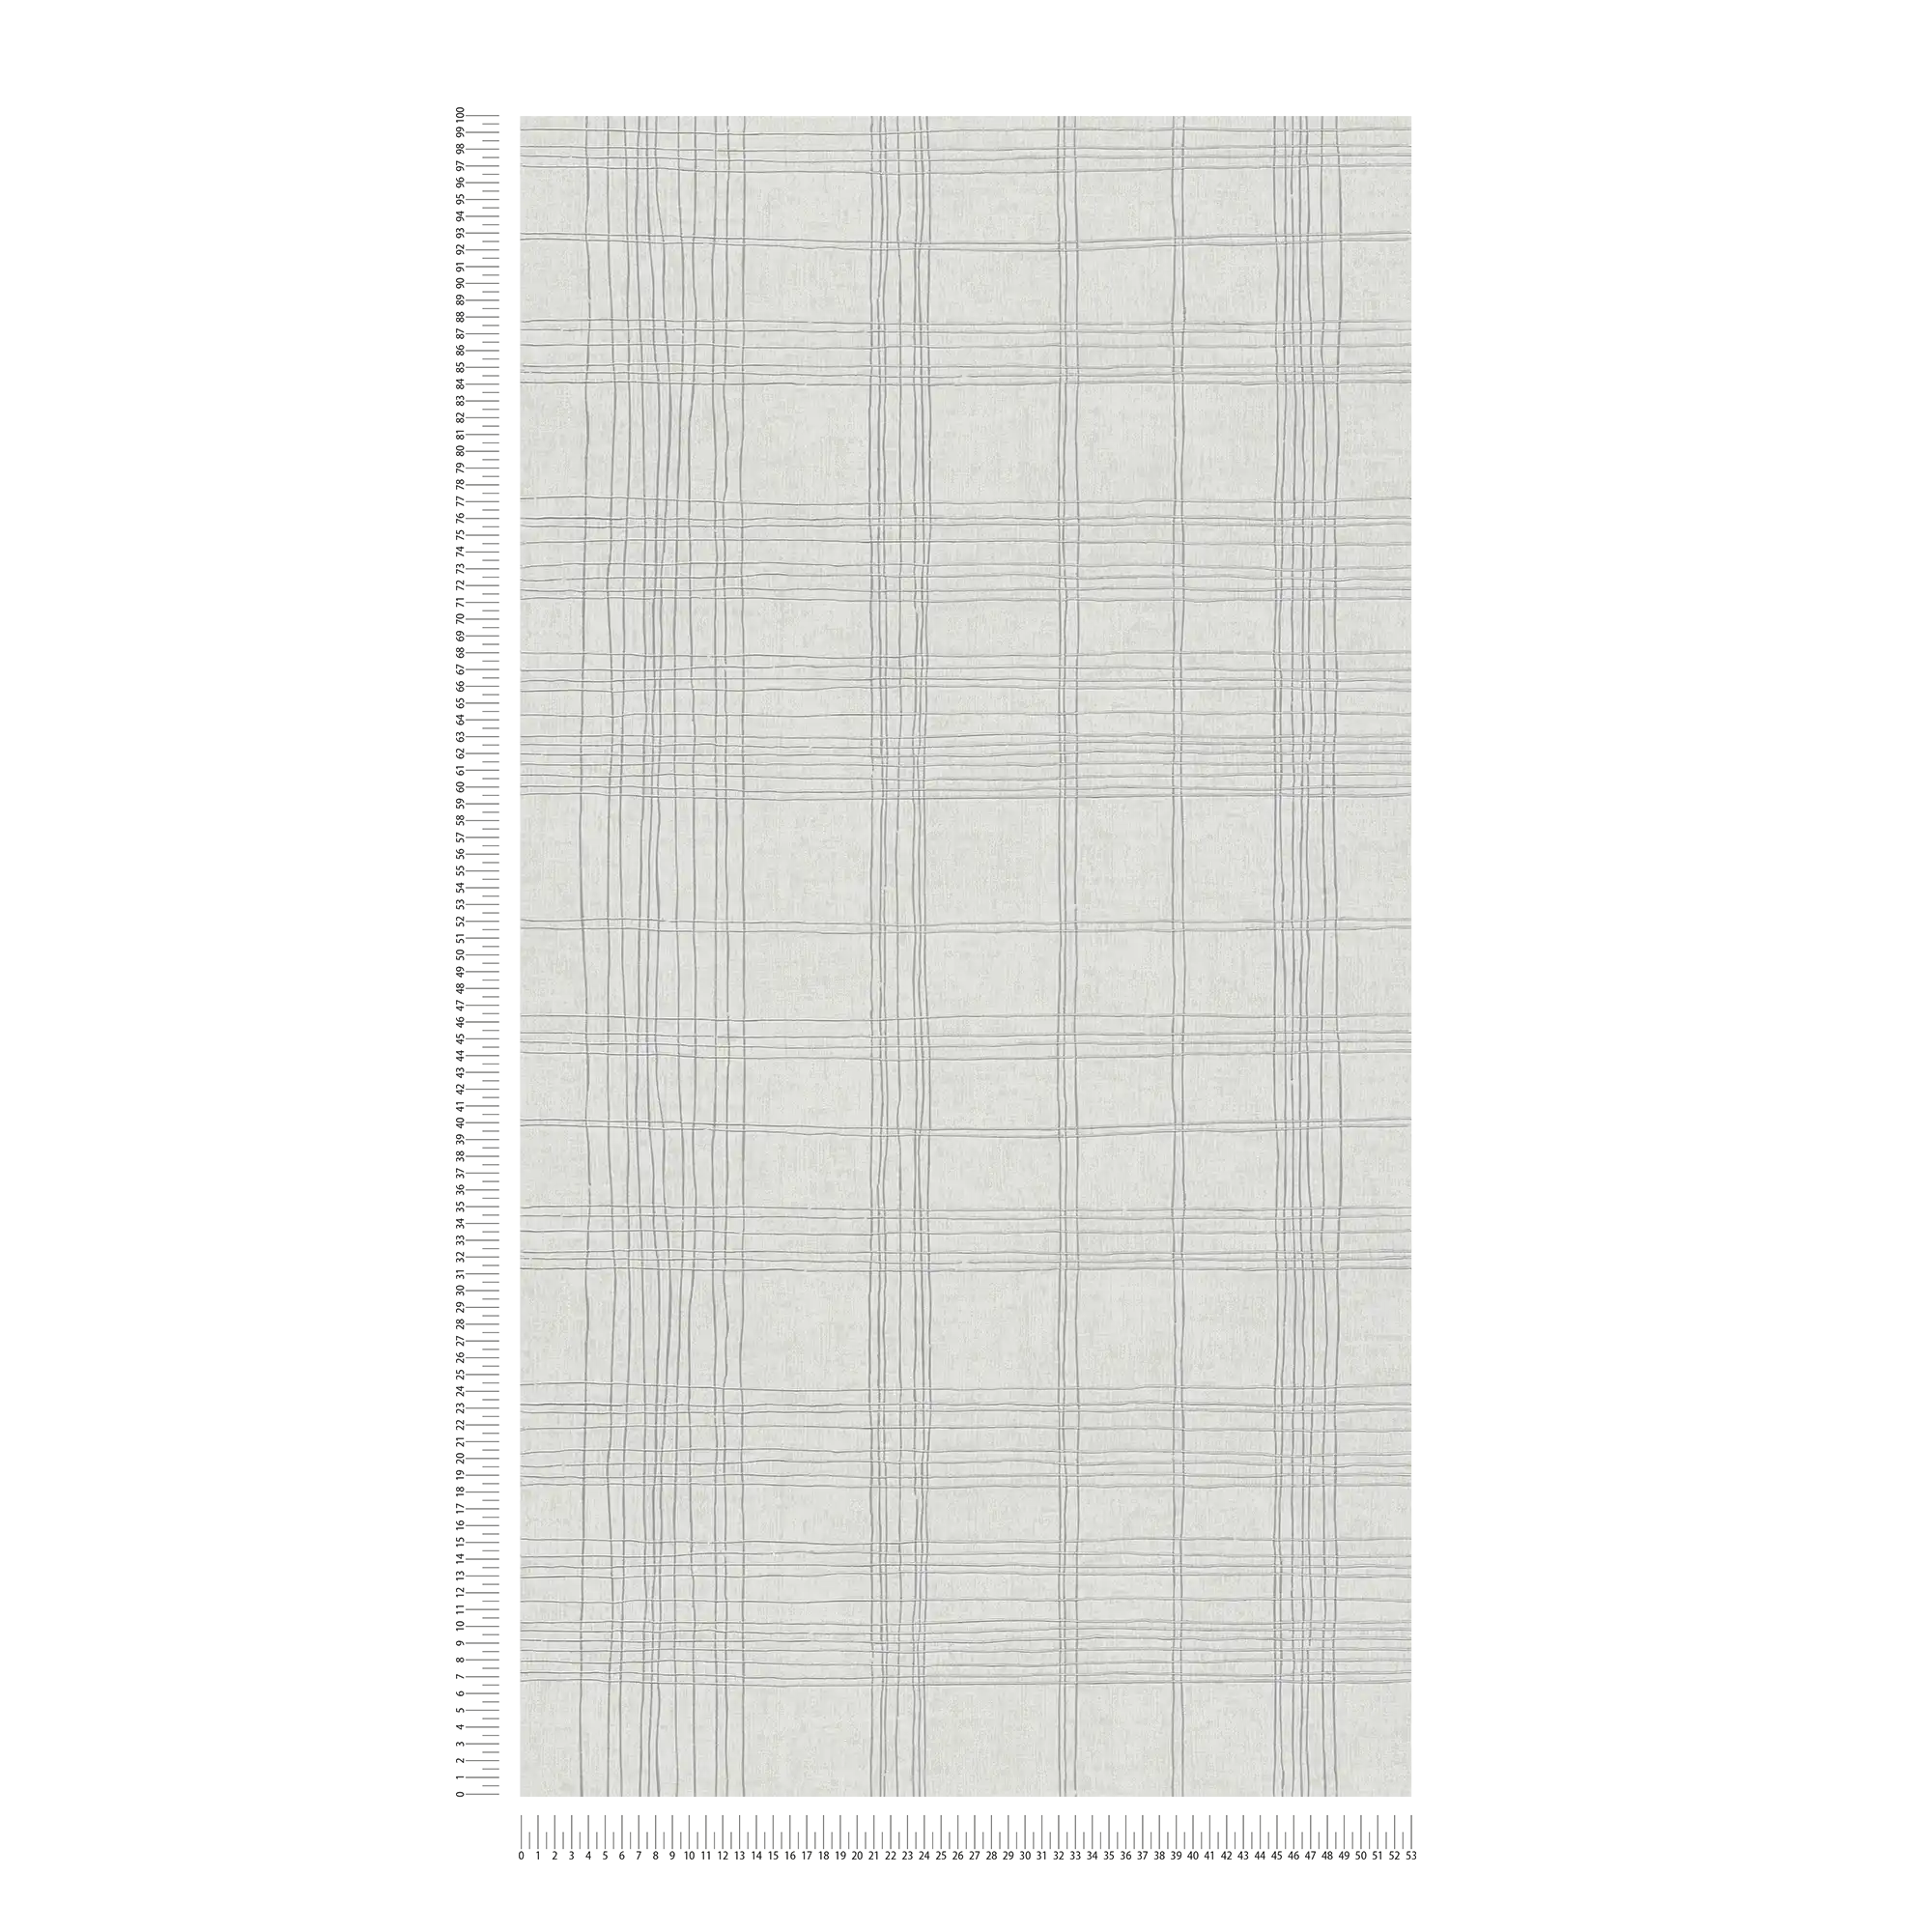             Carta da parati in tessuto non tessuto foderato con effetto metallizzato e motivo a quadri - grigio, metallizzato, bianco
        